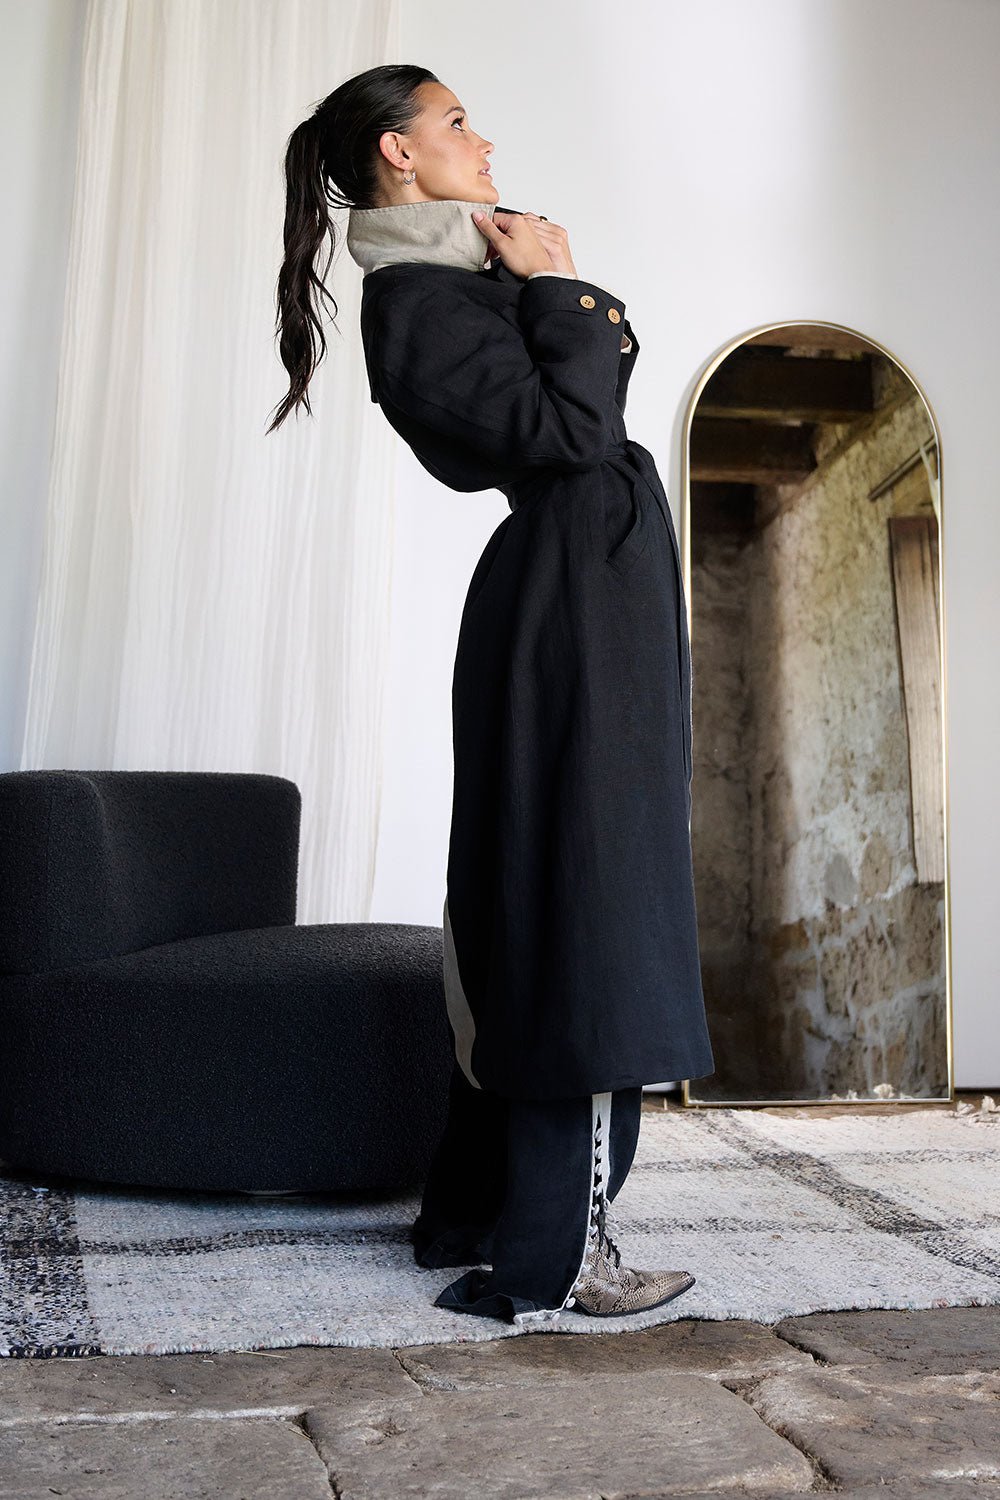 Linen Trench Coat - Black - Eadie Lifestyle